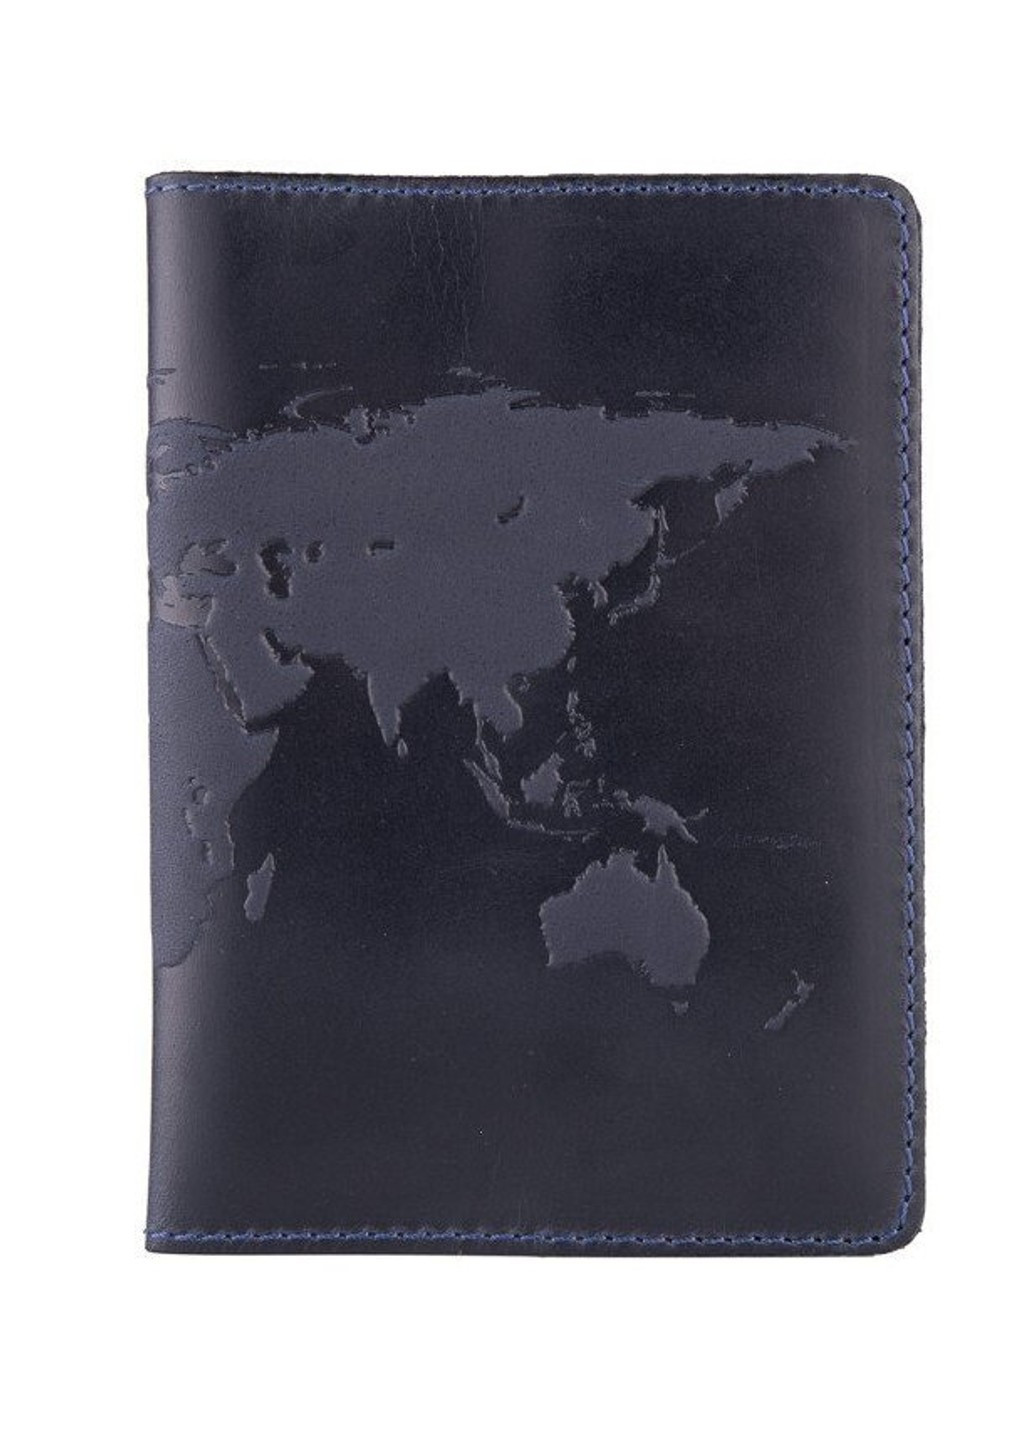 Синя обкладинка для паспорта зі шкіри HiArt PC-02 Синій Hi Art (268371170)